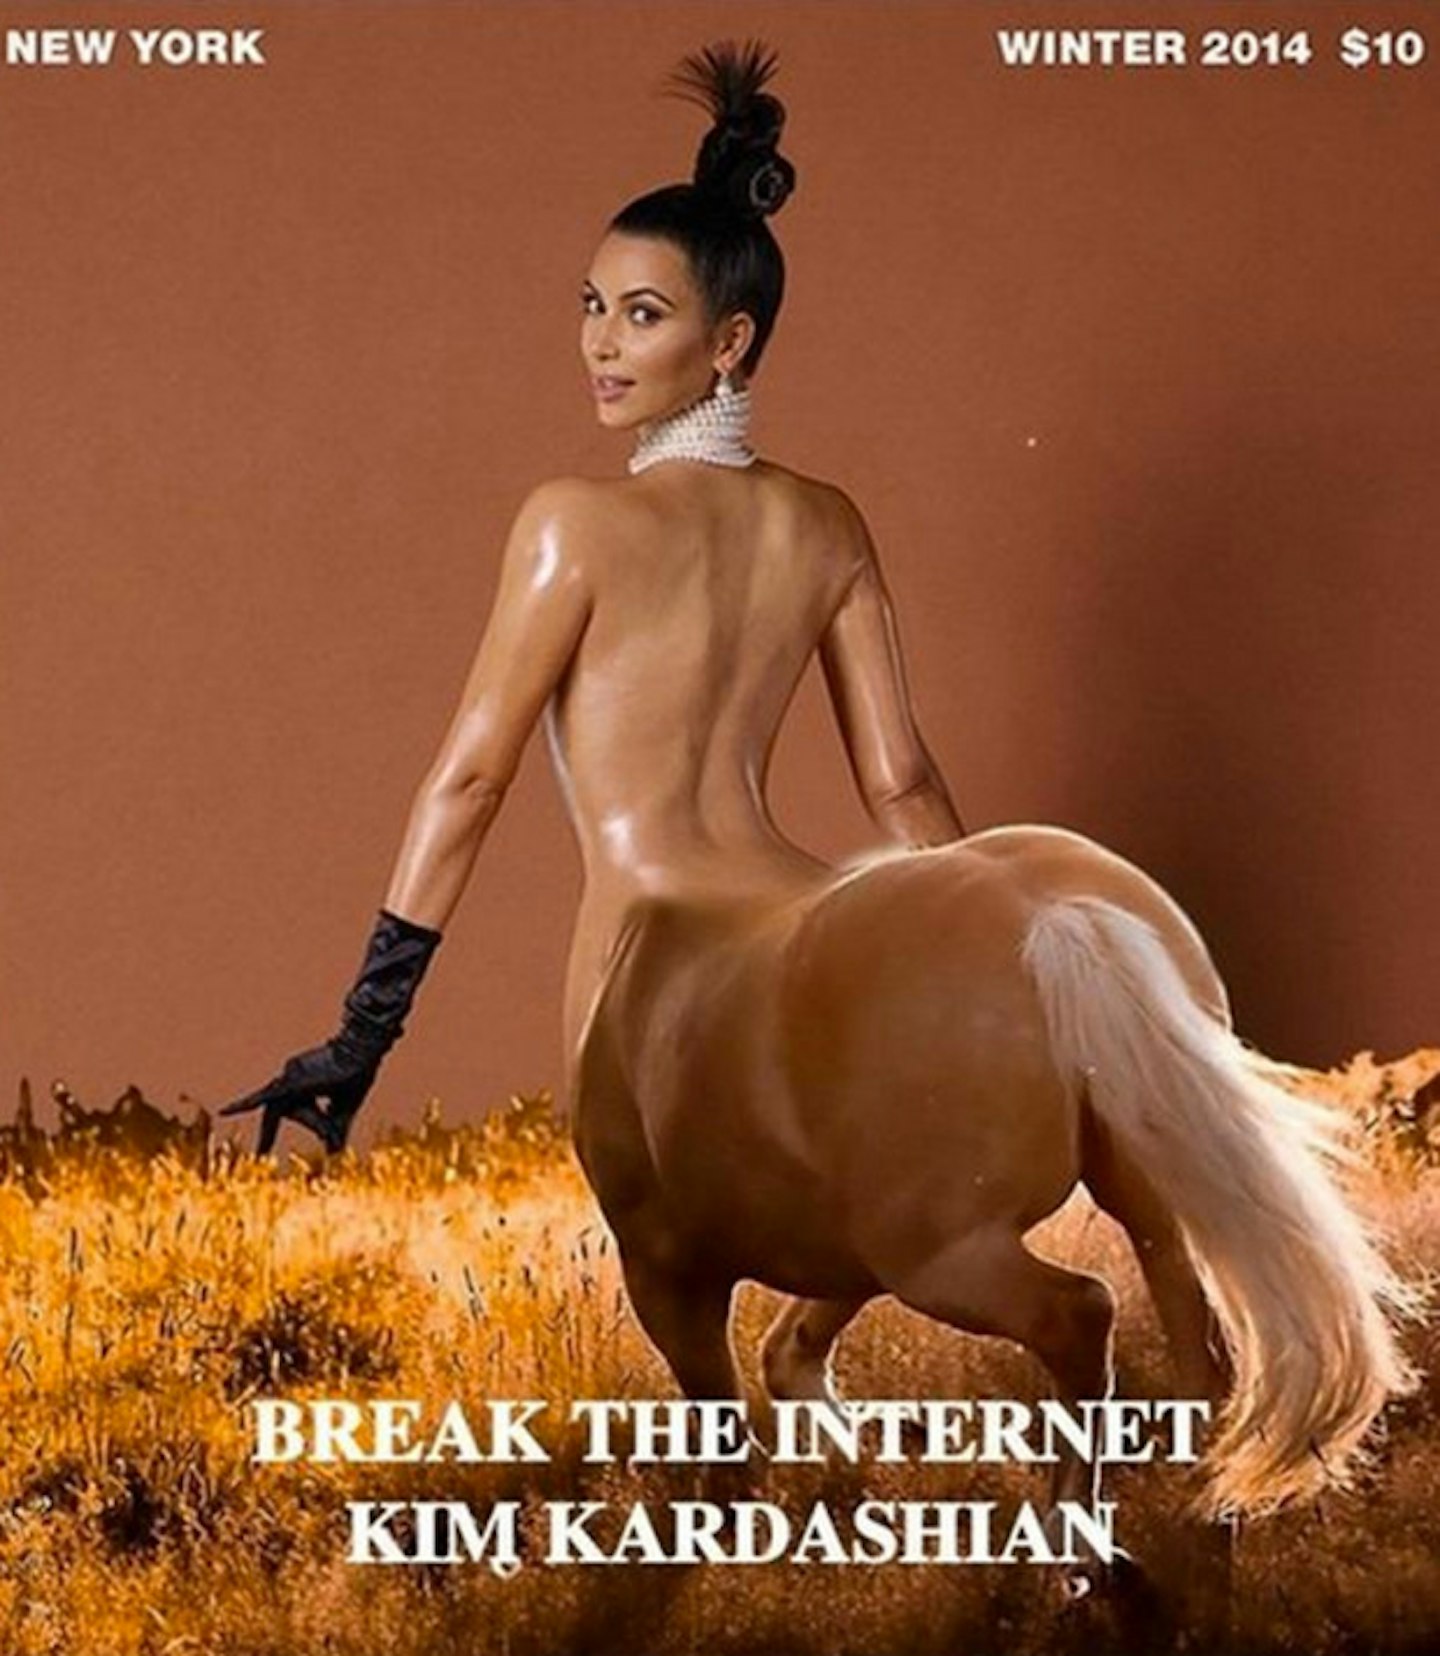 Yep, her butt is so big it looks like a centaur